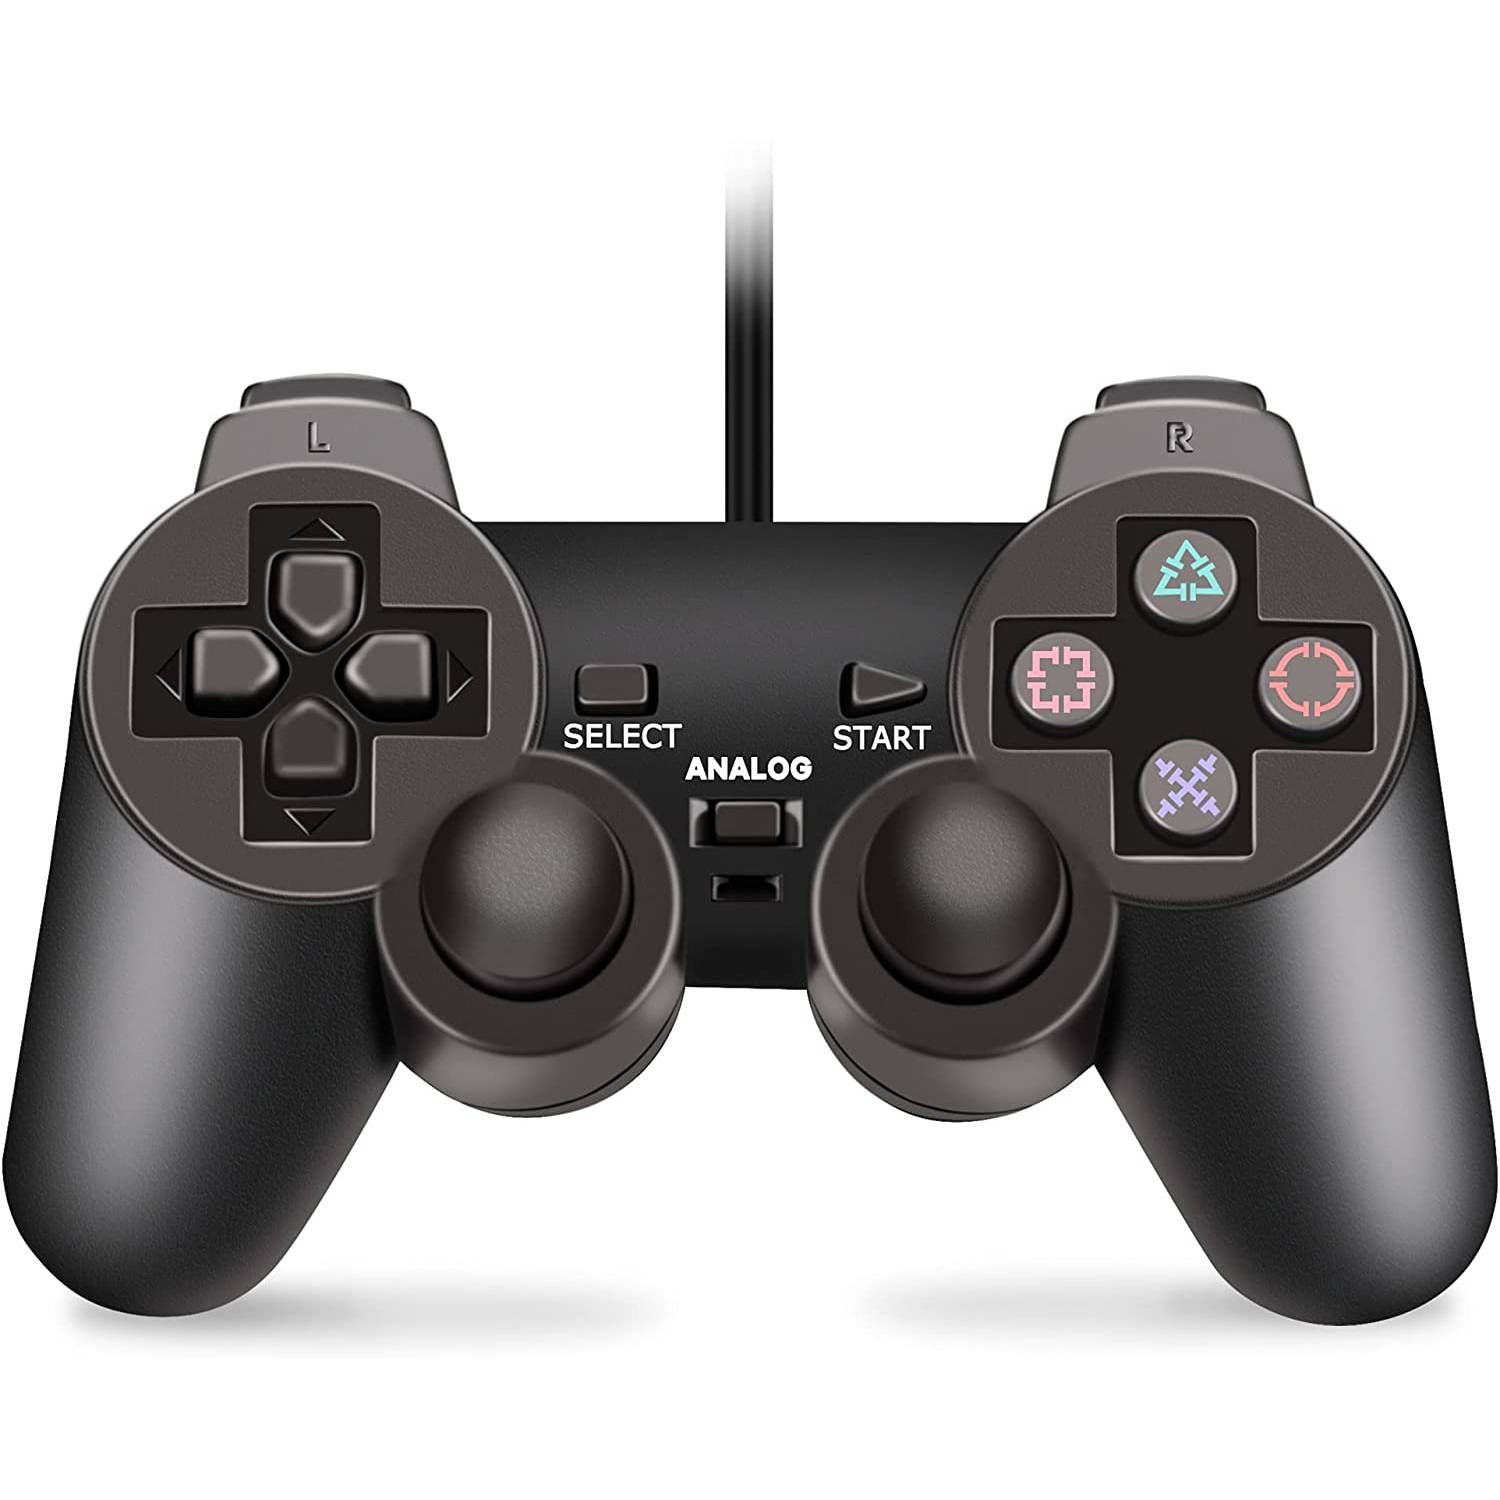 GENERICO Control Ps2 Playstation 2 Dual Shock 2 Compatible con Ps1